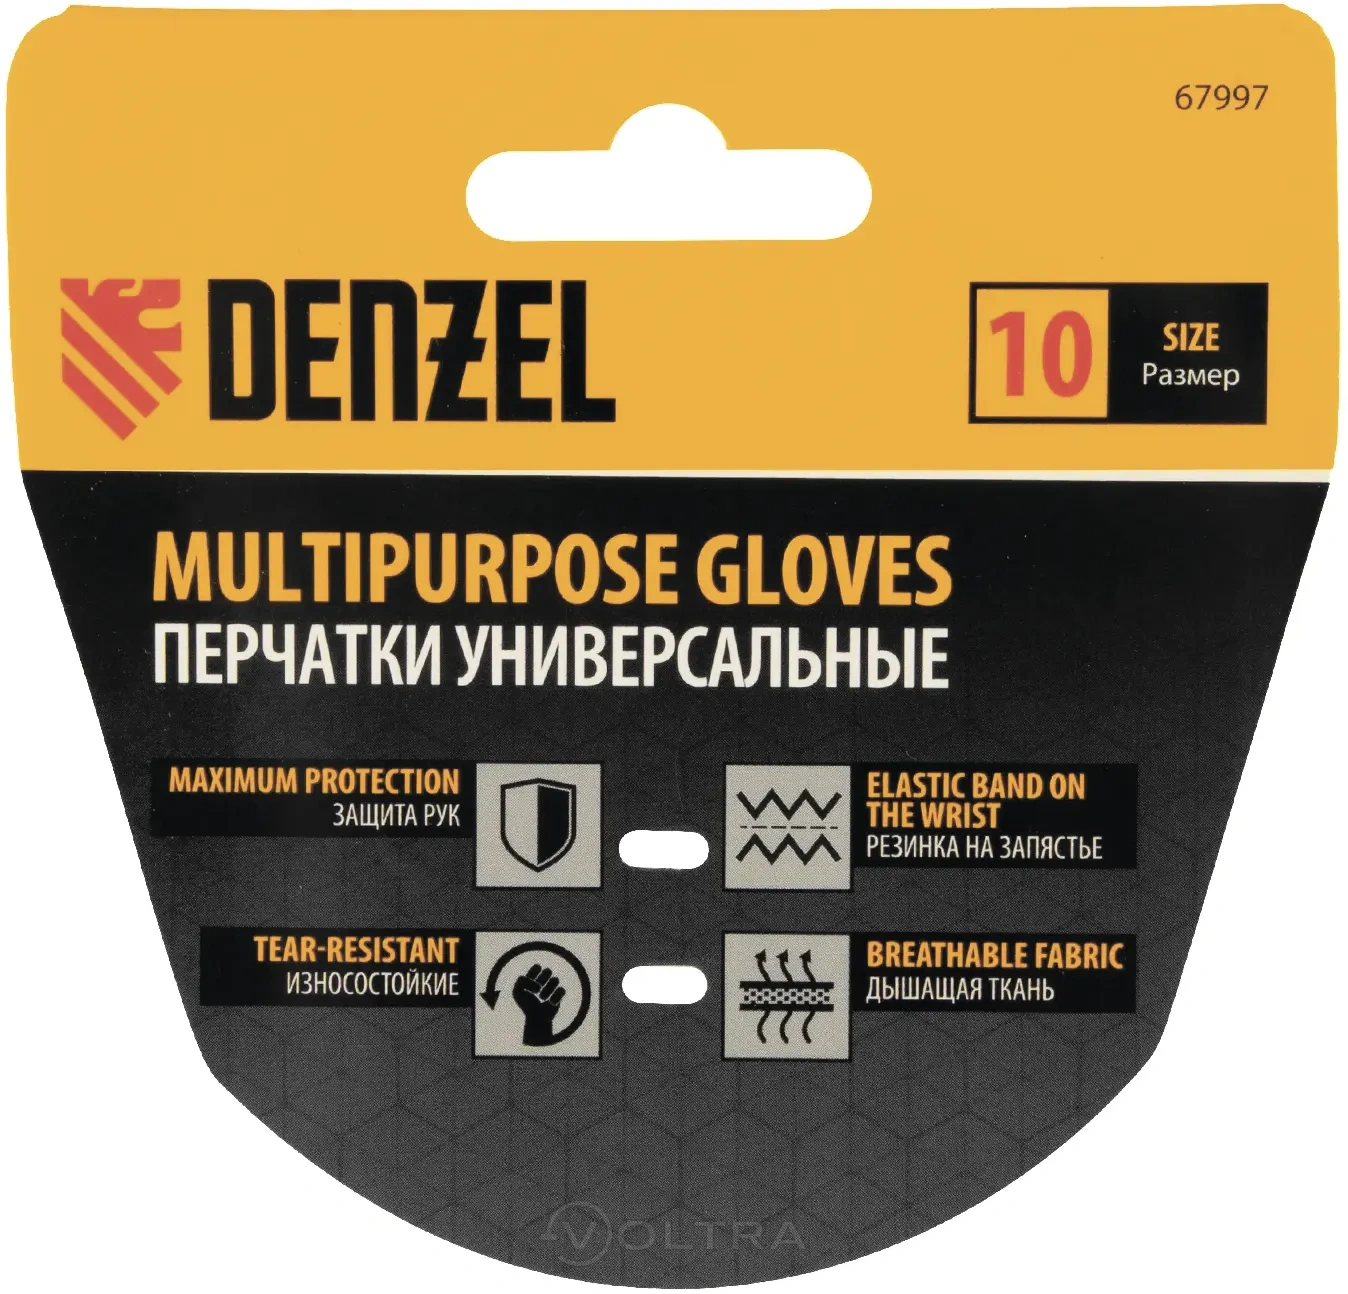 Перчатки универсальные размер 10 Denzel (67997)